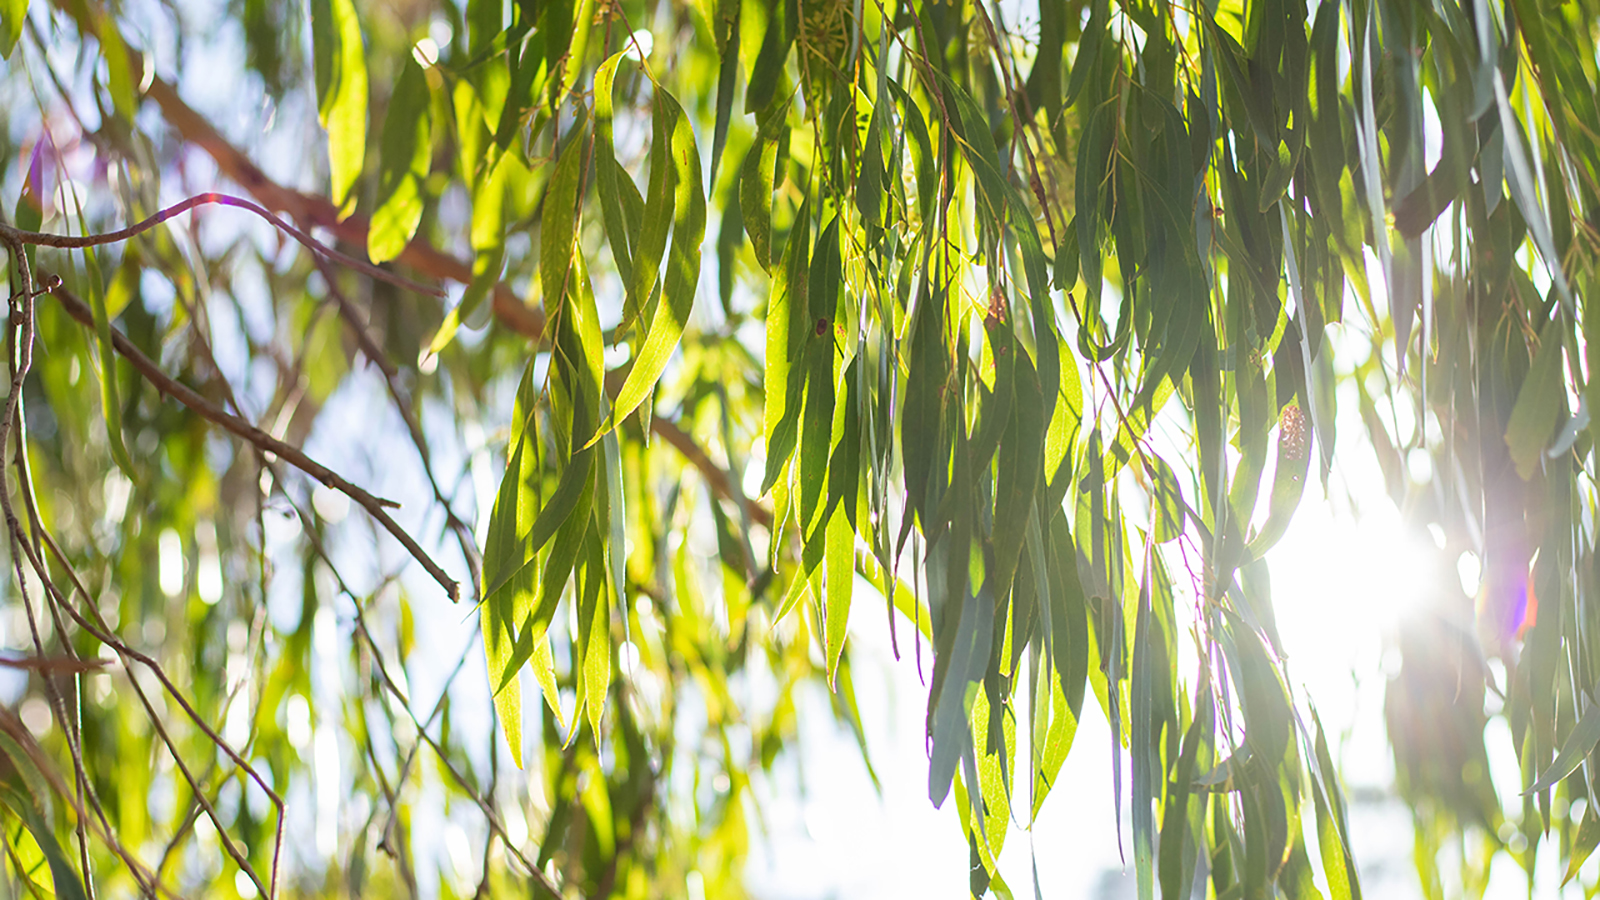 Flora: Sunlight through gum leaves